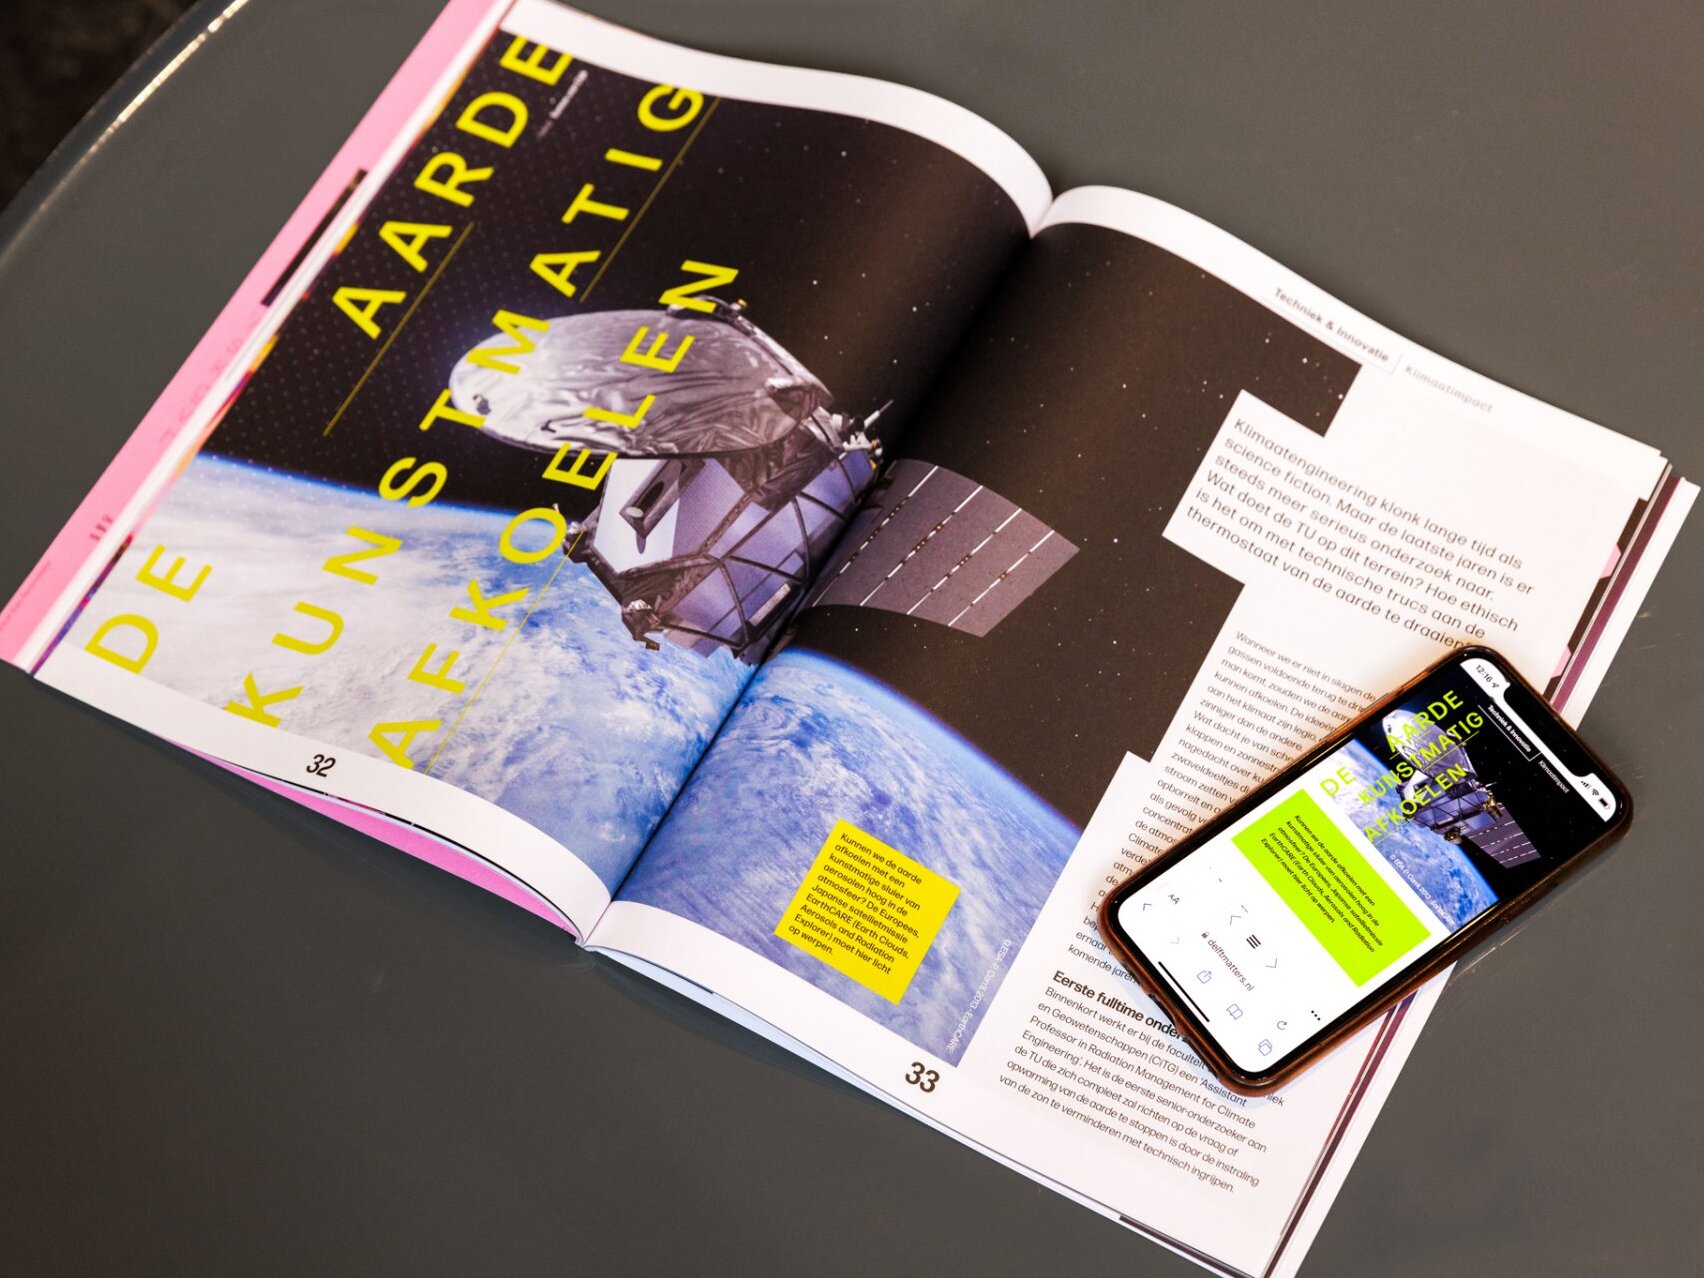 Artikel Delft Matters magazine en mobile content